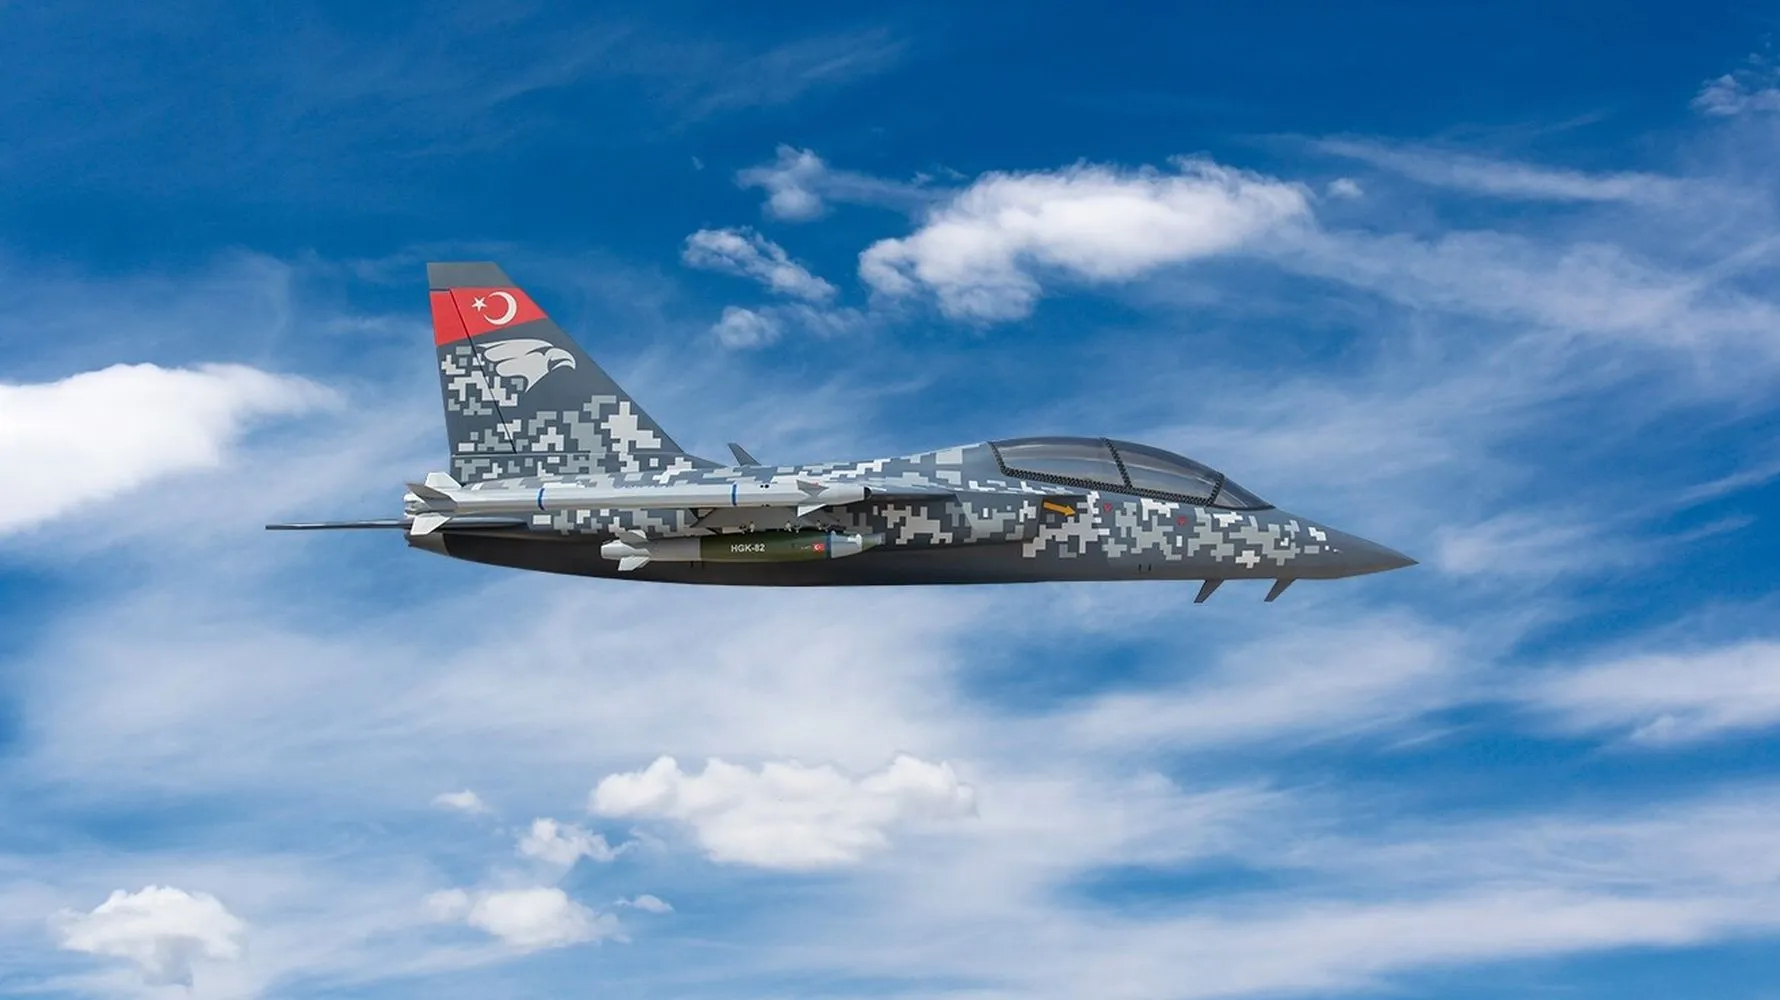 L'aereo da attacco leggero turco TAI Hürjet ha lasciato l'hangar per la prima volta - l'aereo sarà utilizzato per l'addestramento dei piloti di F-35 e TAI-TF-X